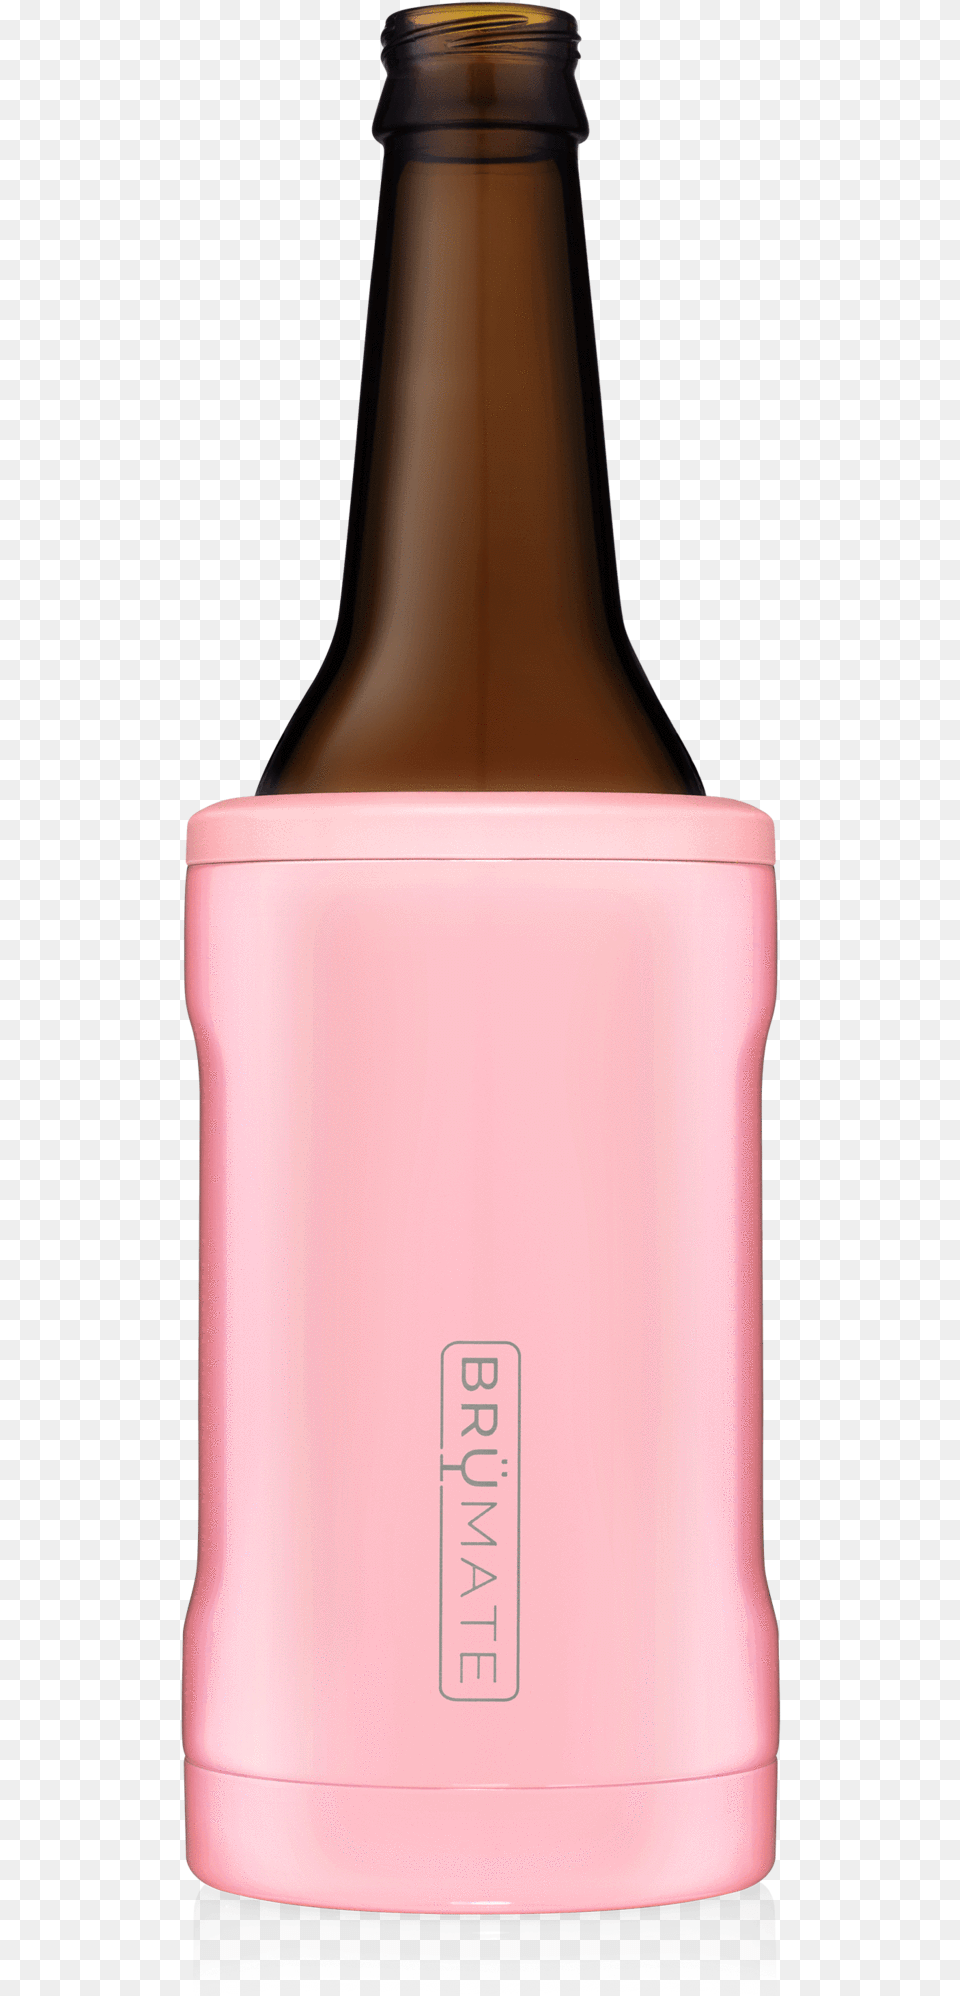 Brmate Hopsulator Bott39l Bottle Cooler, Alcohol, Beer, Beverage, Beer Bottle Free Png